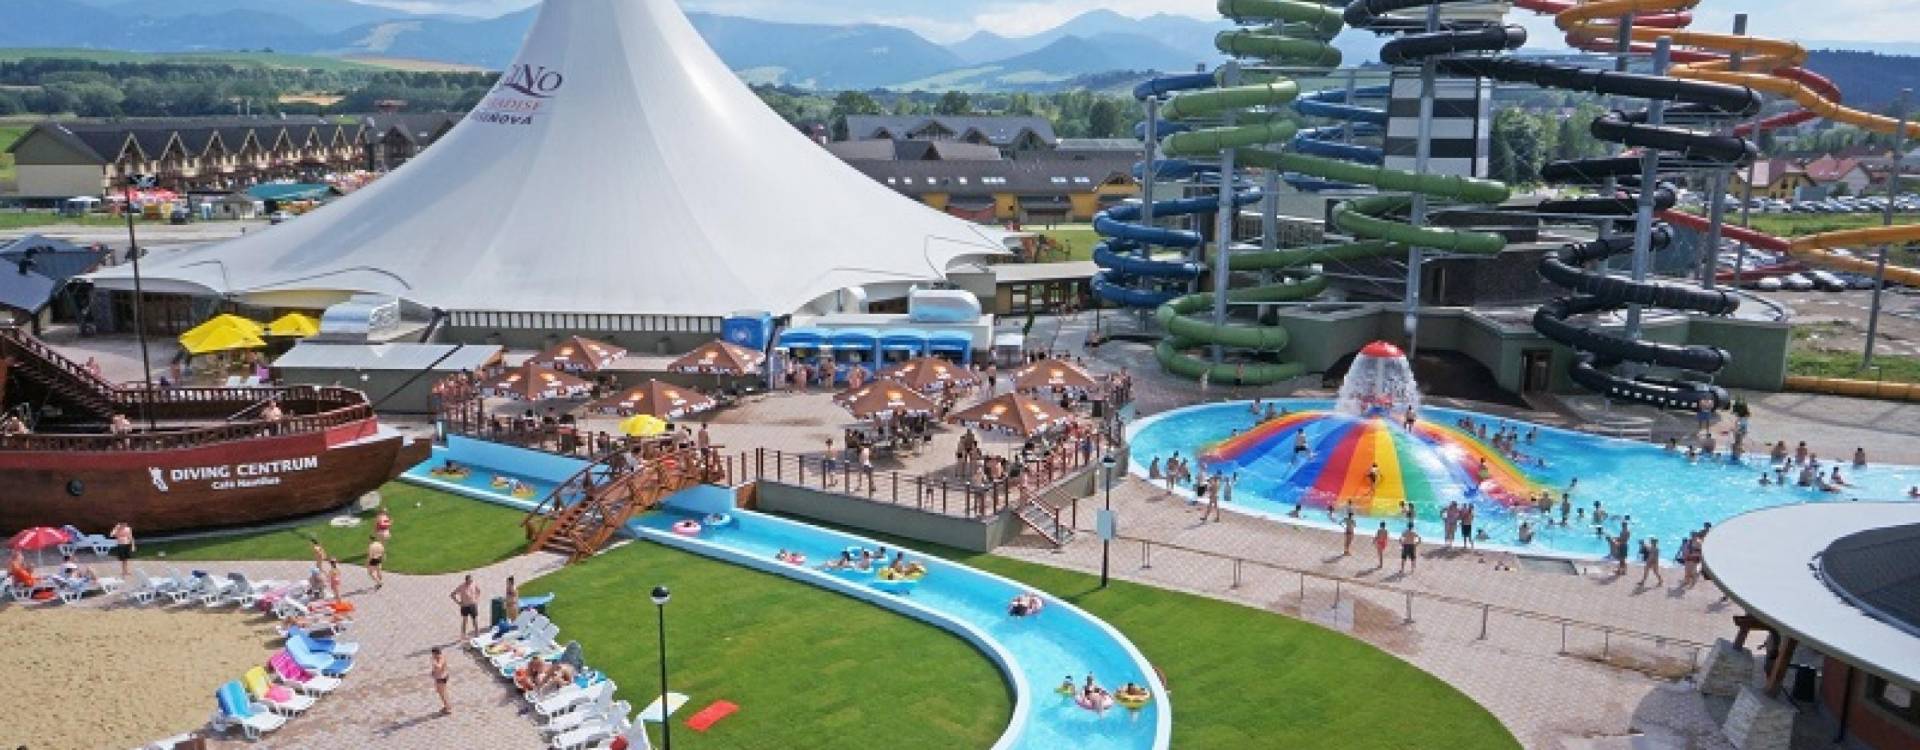 Vodní park Bešeňová - Provozní doba a otevření bazénů o květnových svátcích; plánovaná odstávka bazénové haly Átrium